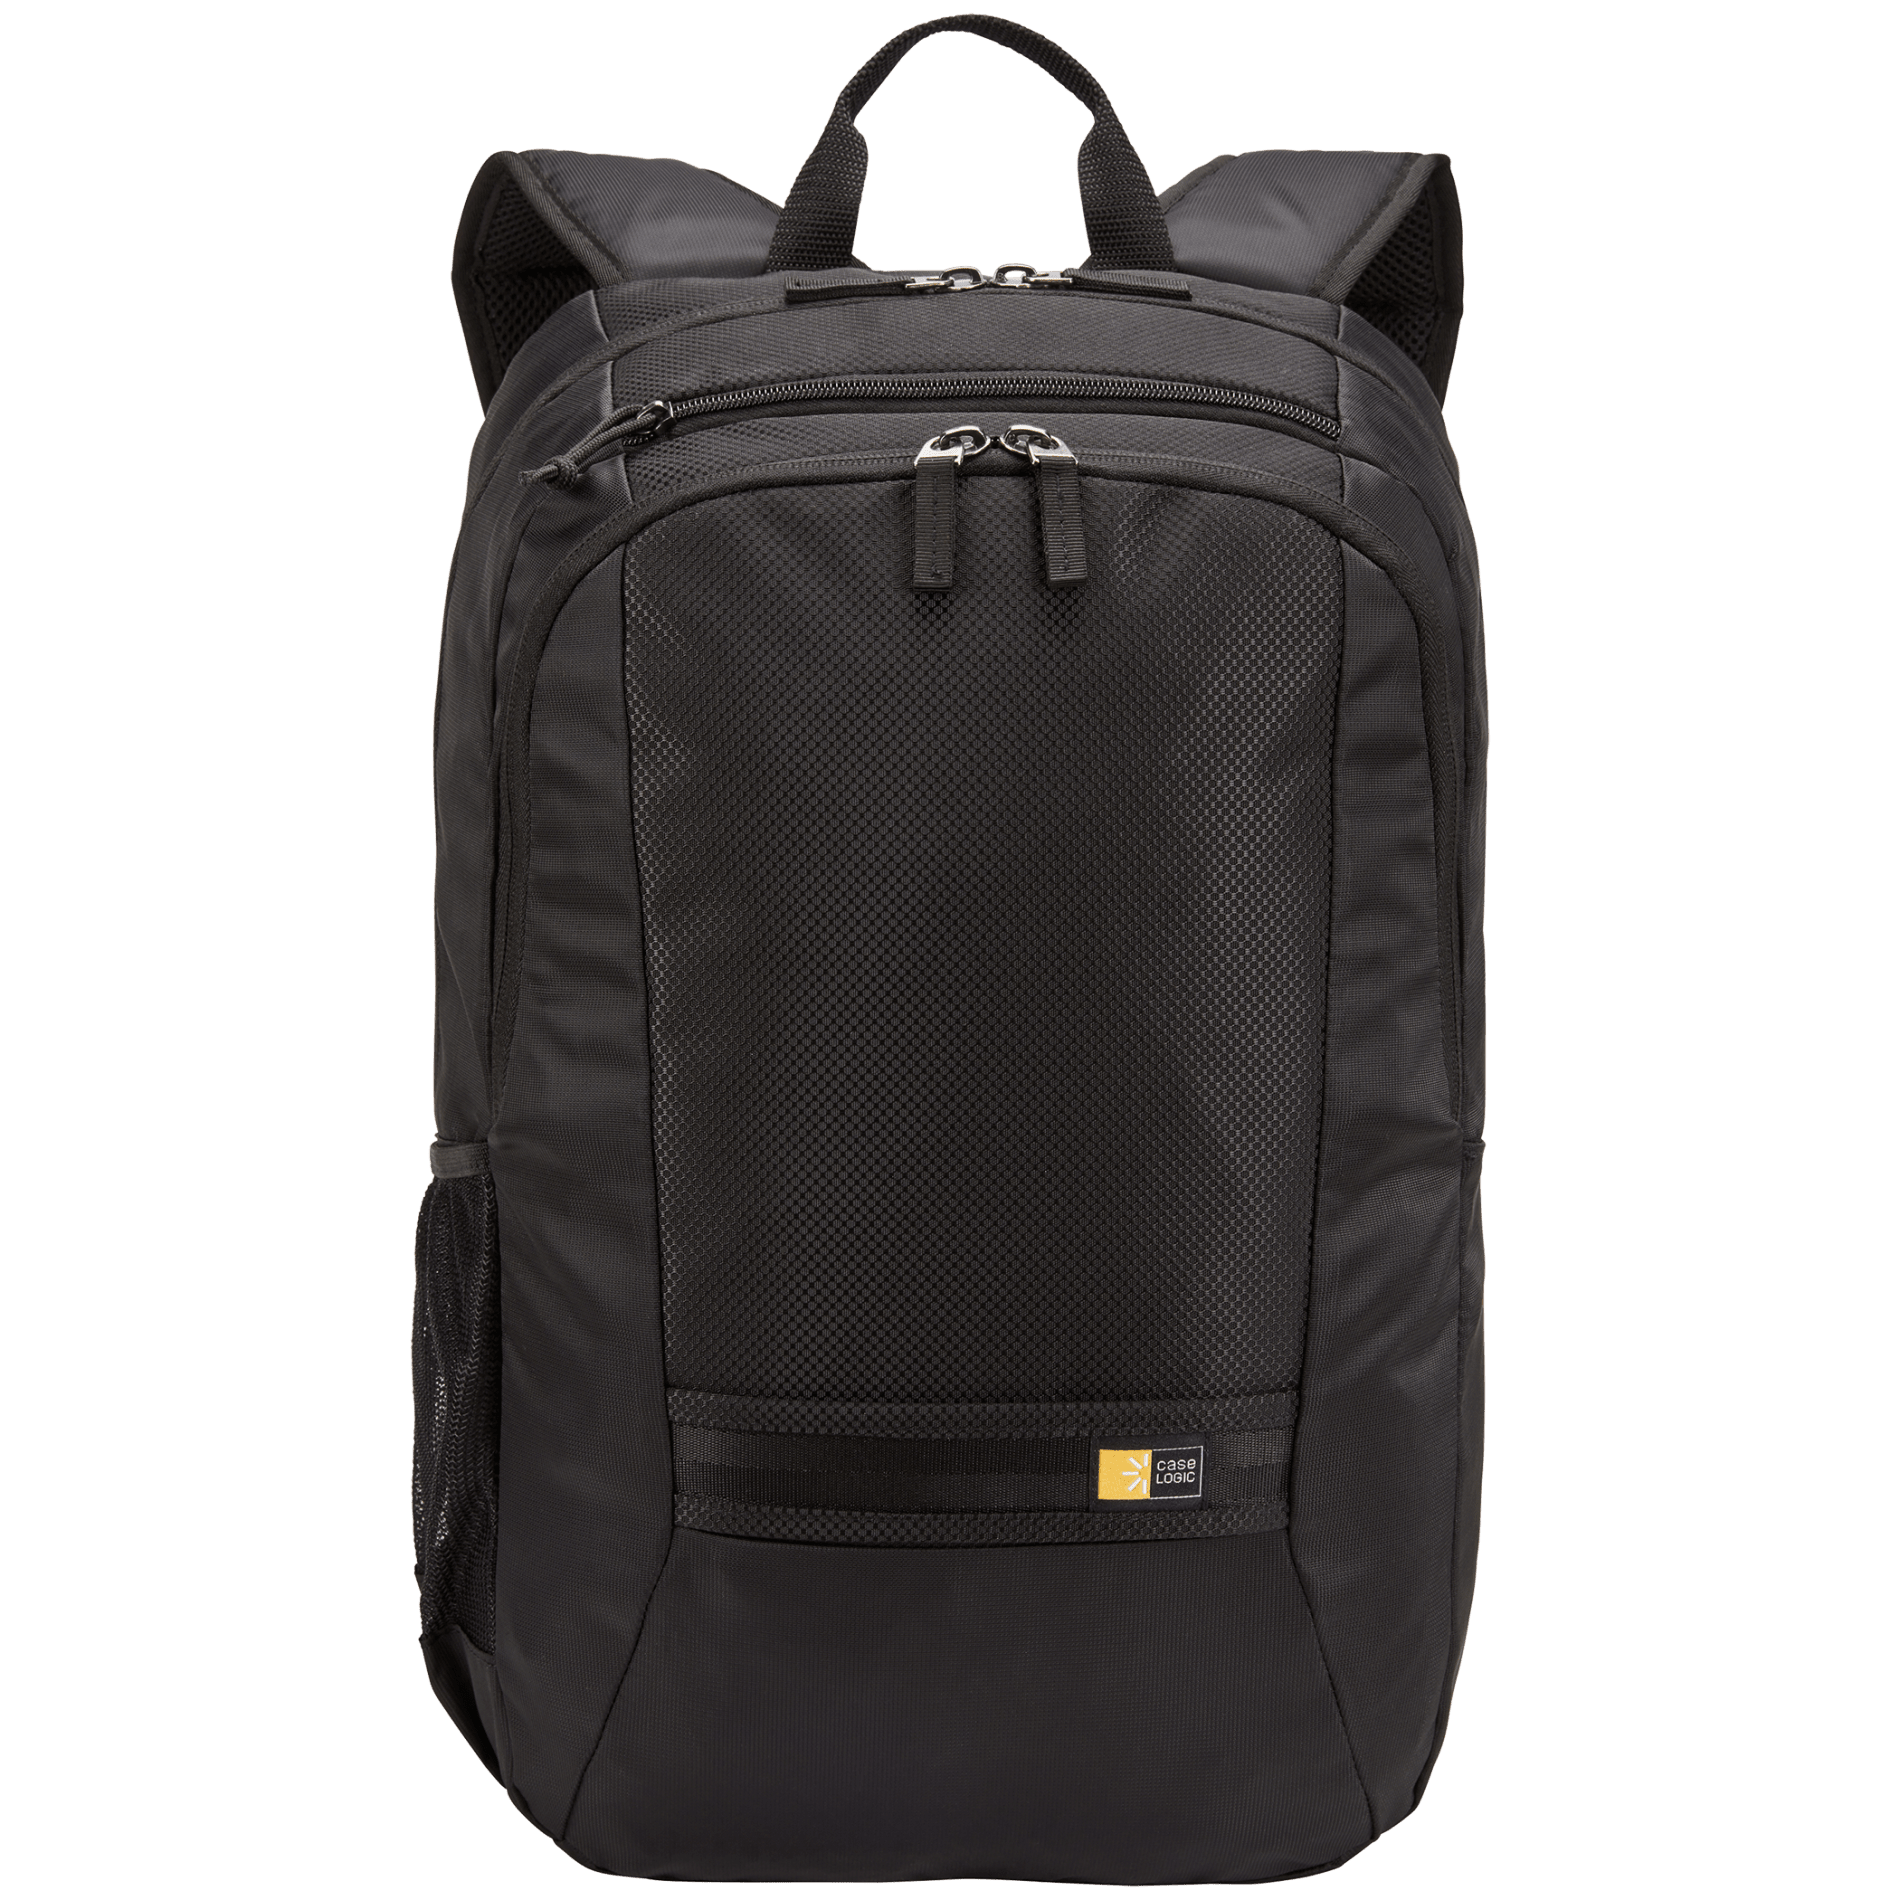 Case Logic 8151-08 - Key 15" Computer Backpack